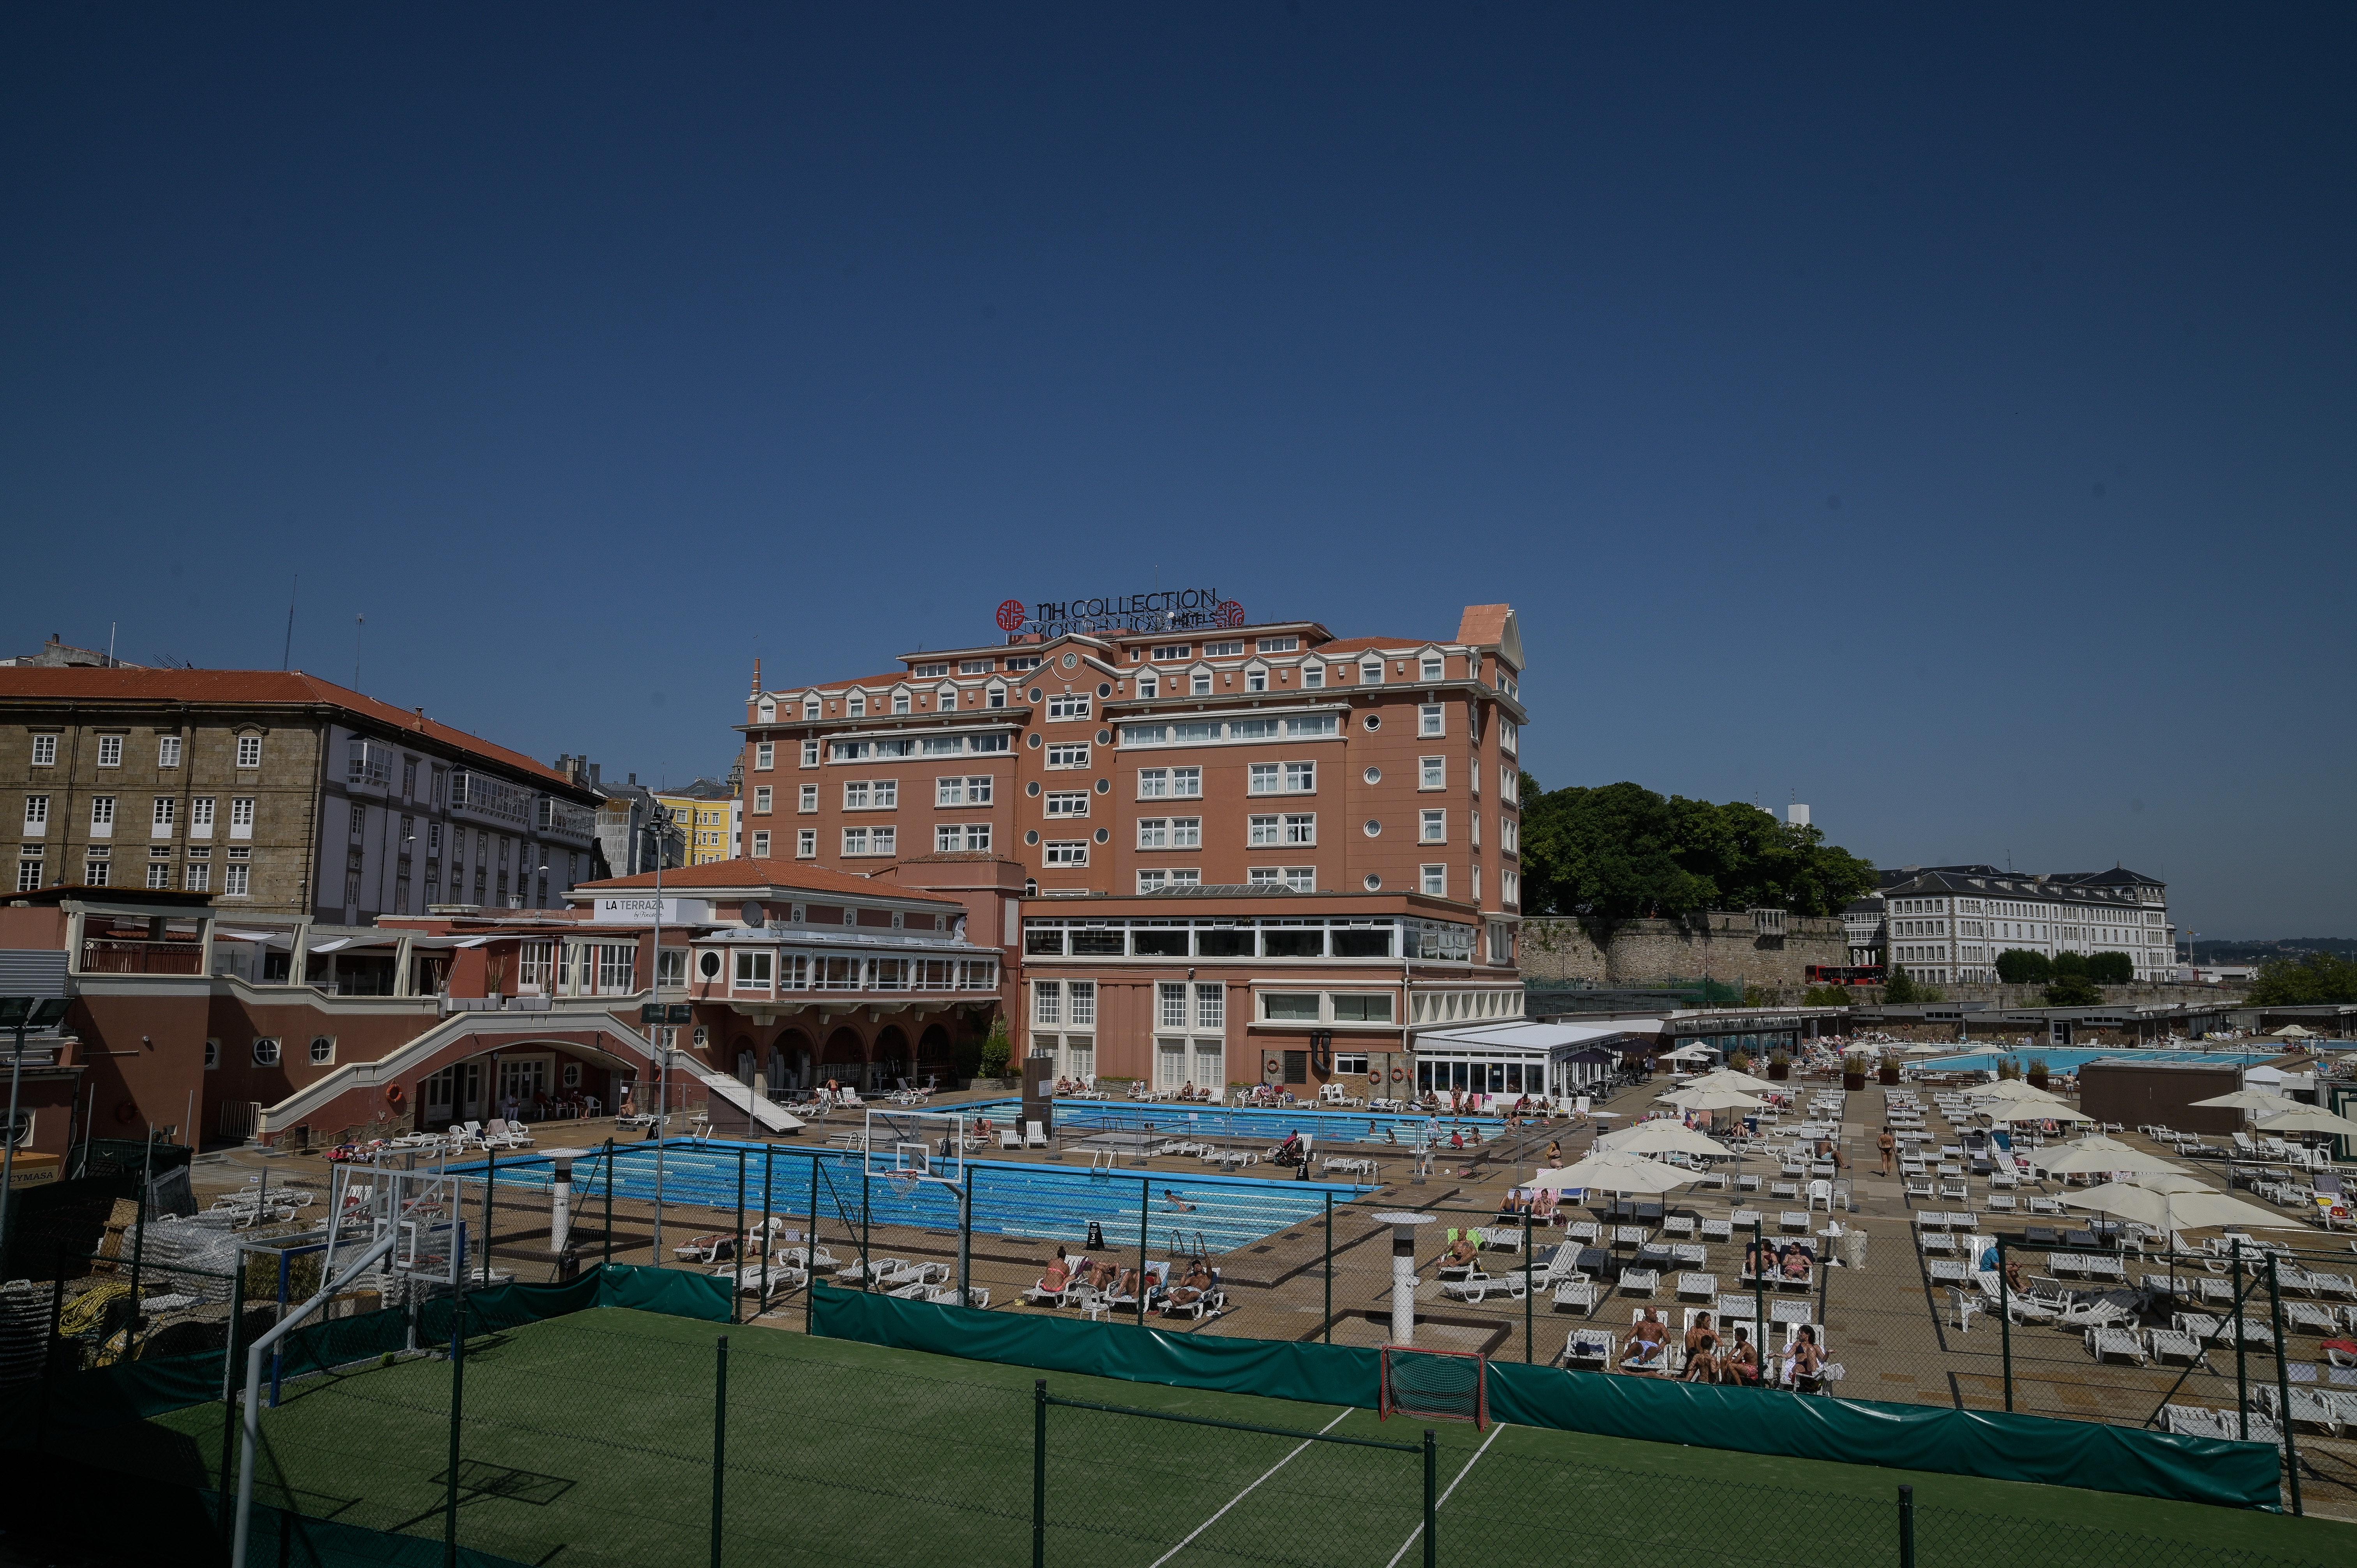 Hotel NH Finisterre de A Coruña, donde guarda cuarentena el equipo C.F. Fuenlabrada. EP